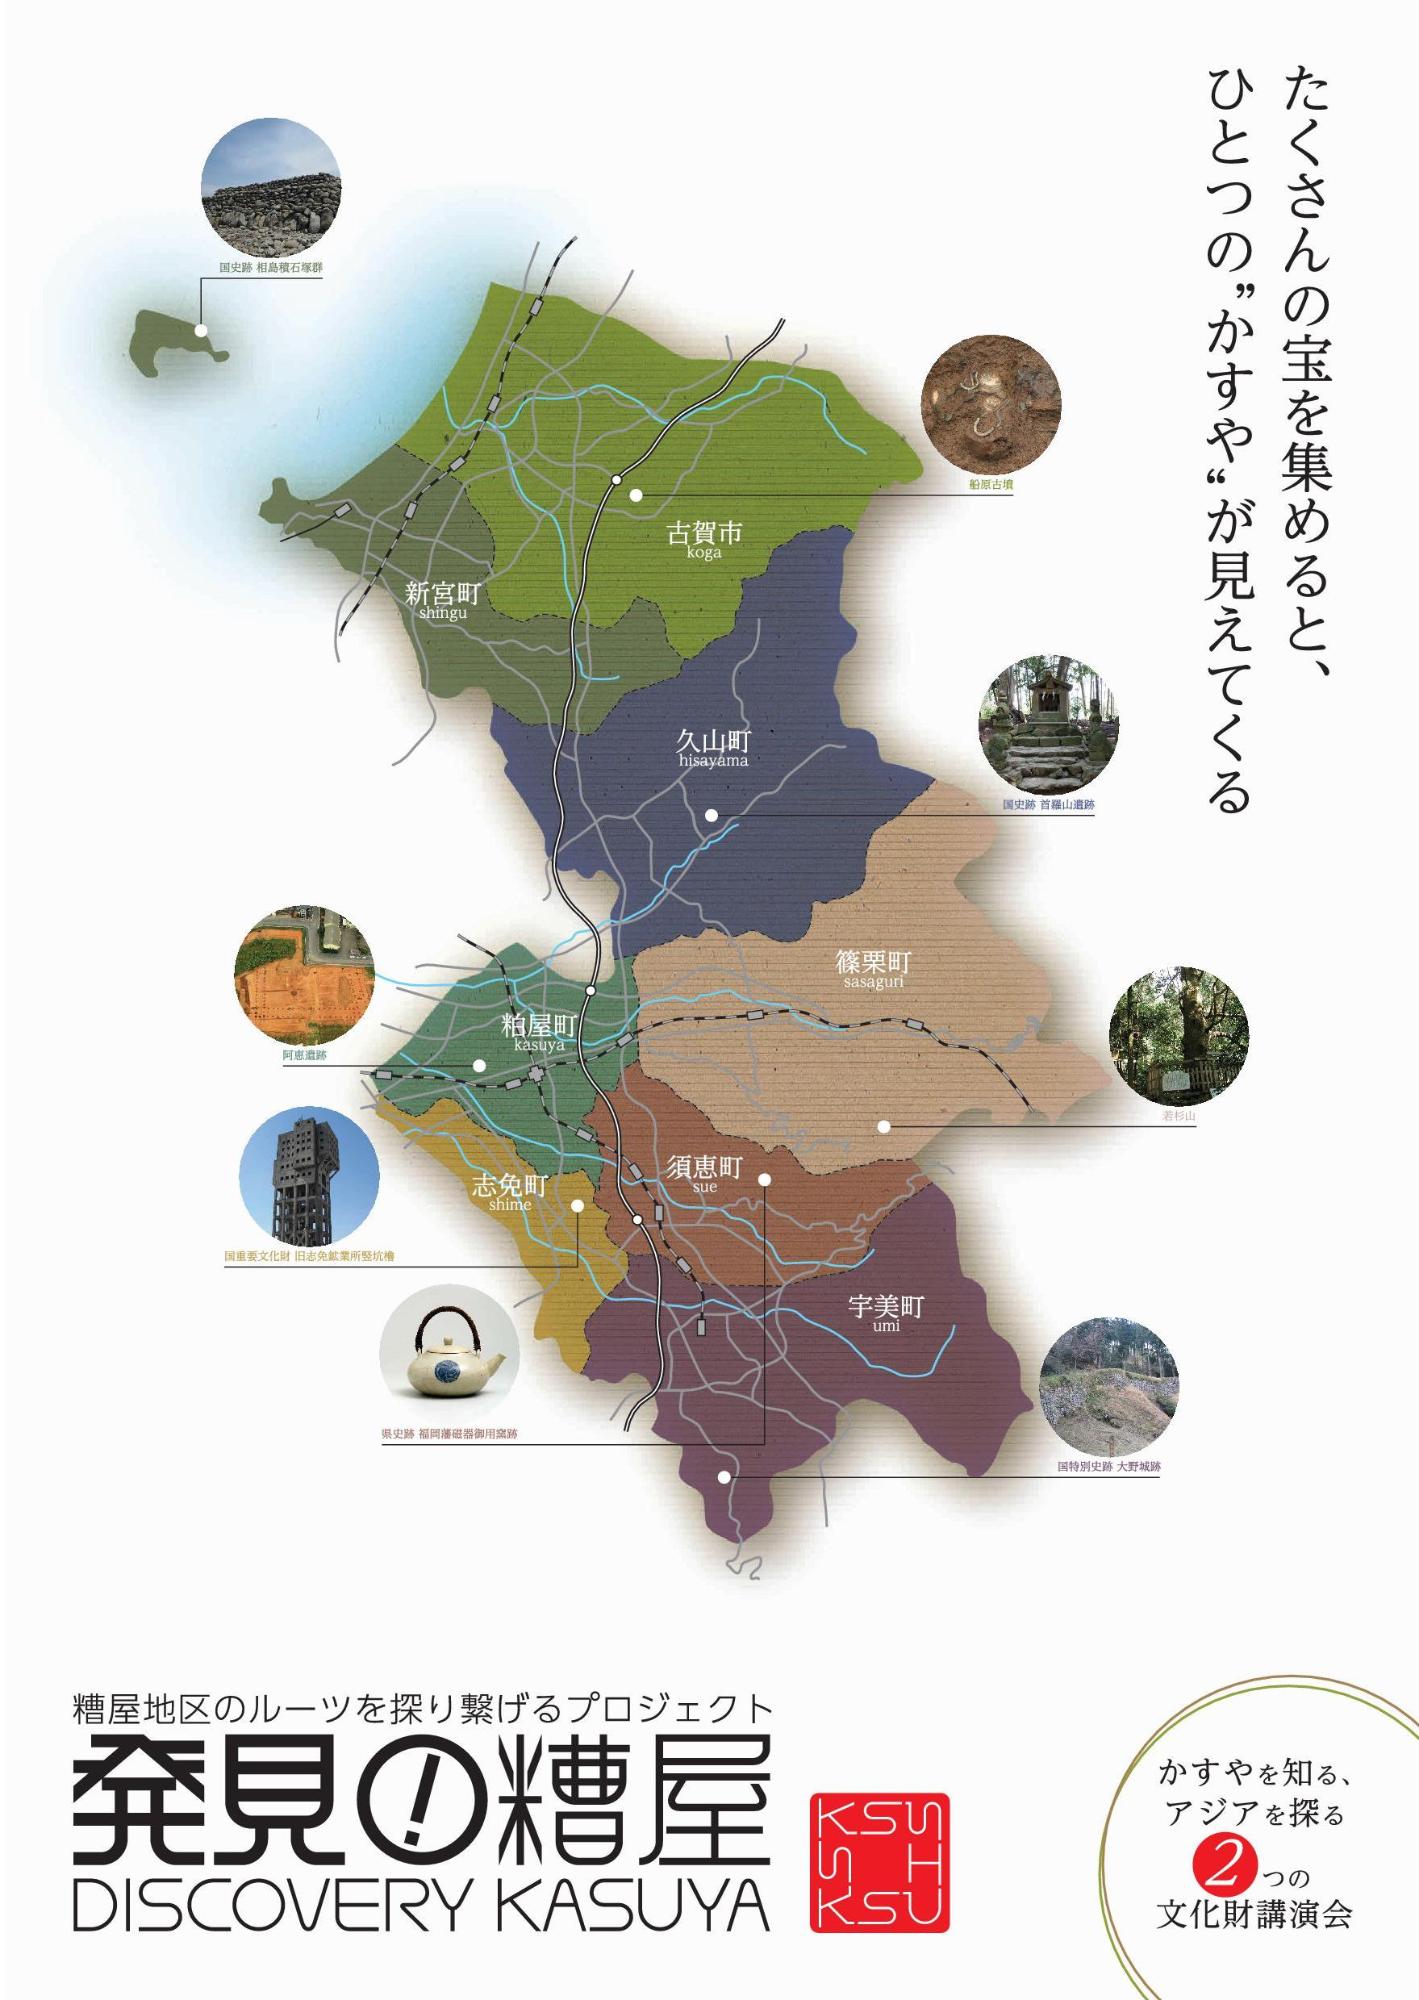 糟屋地区のルーツを探り繋げるプロジェクト『発見!糟屋』/DISCOVERY KASUYA」のポスター